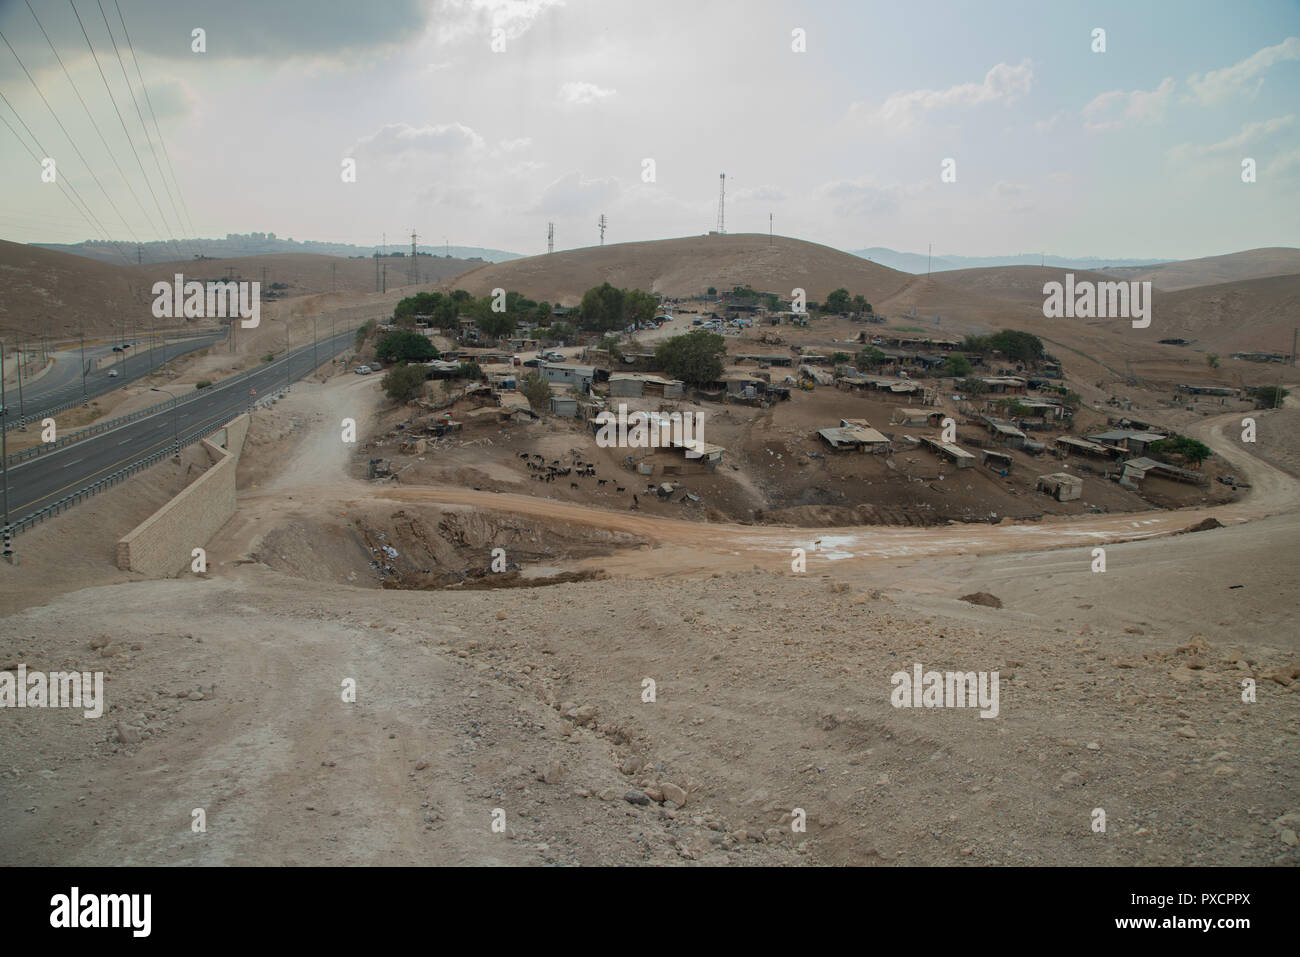 Die bedrohte Beduinen Dorf Khan al-Ahmar durch die israelische Siedlung, der gesetzt wird, es ist Land zu übersehen. Westjordanland, Palästina, 17/10/2018 Stockfoto